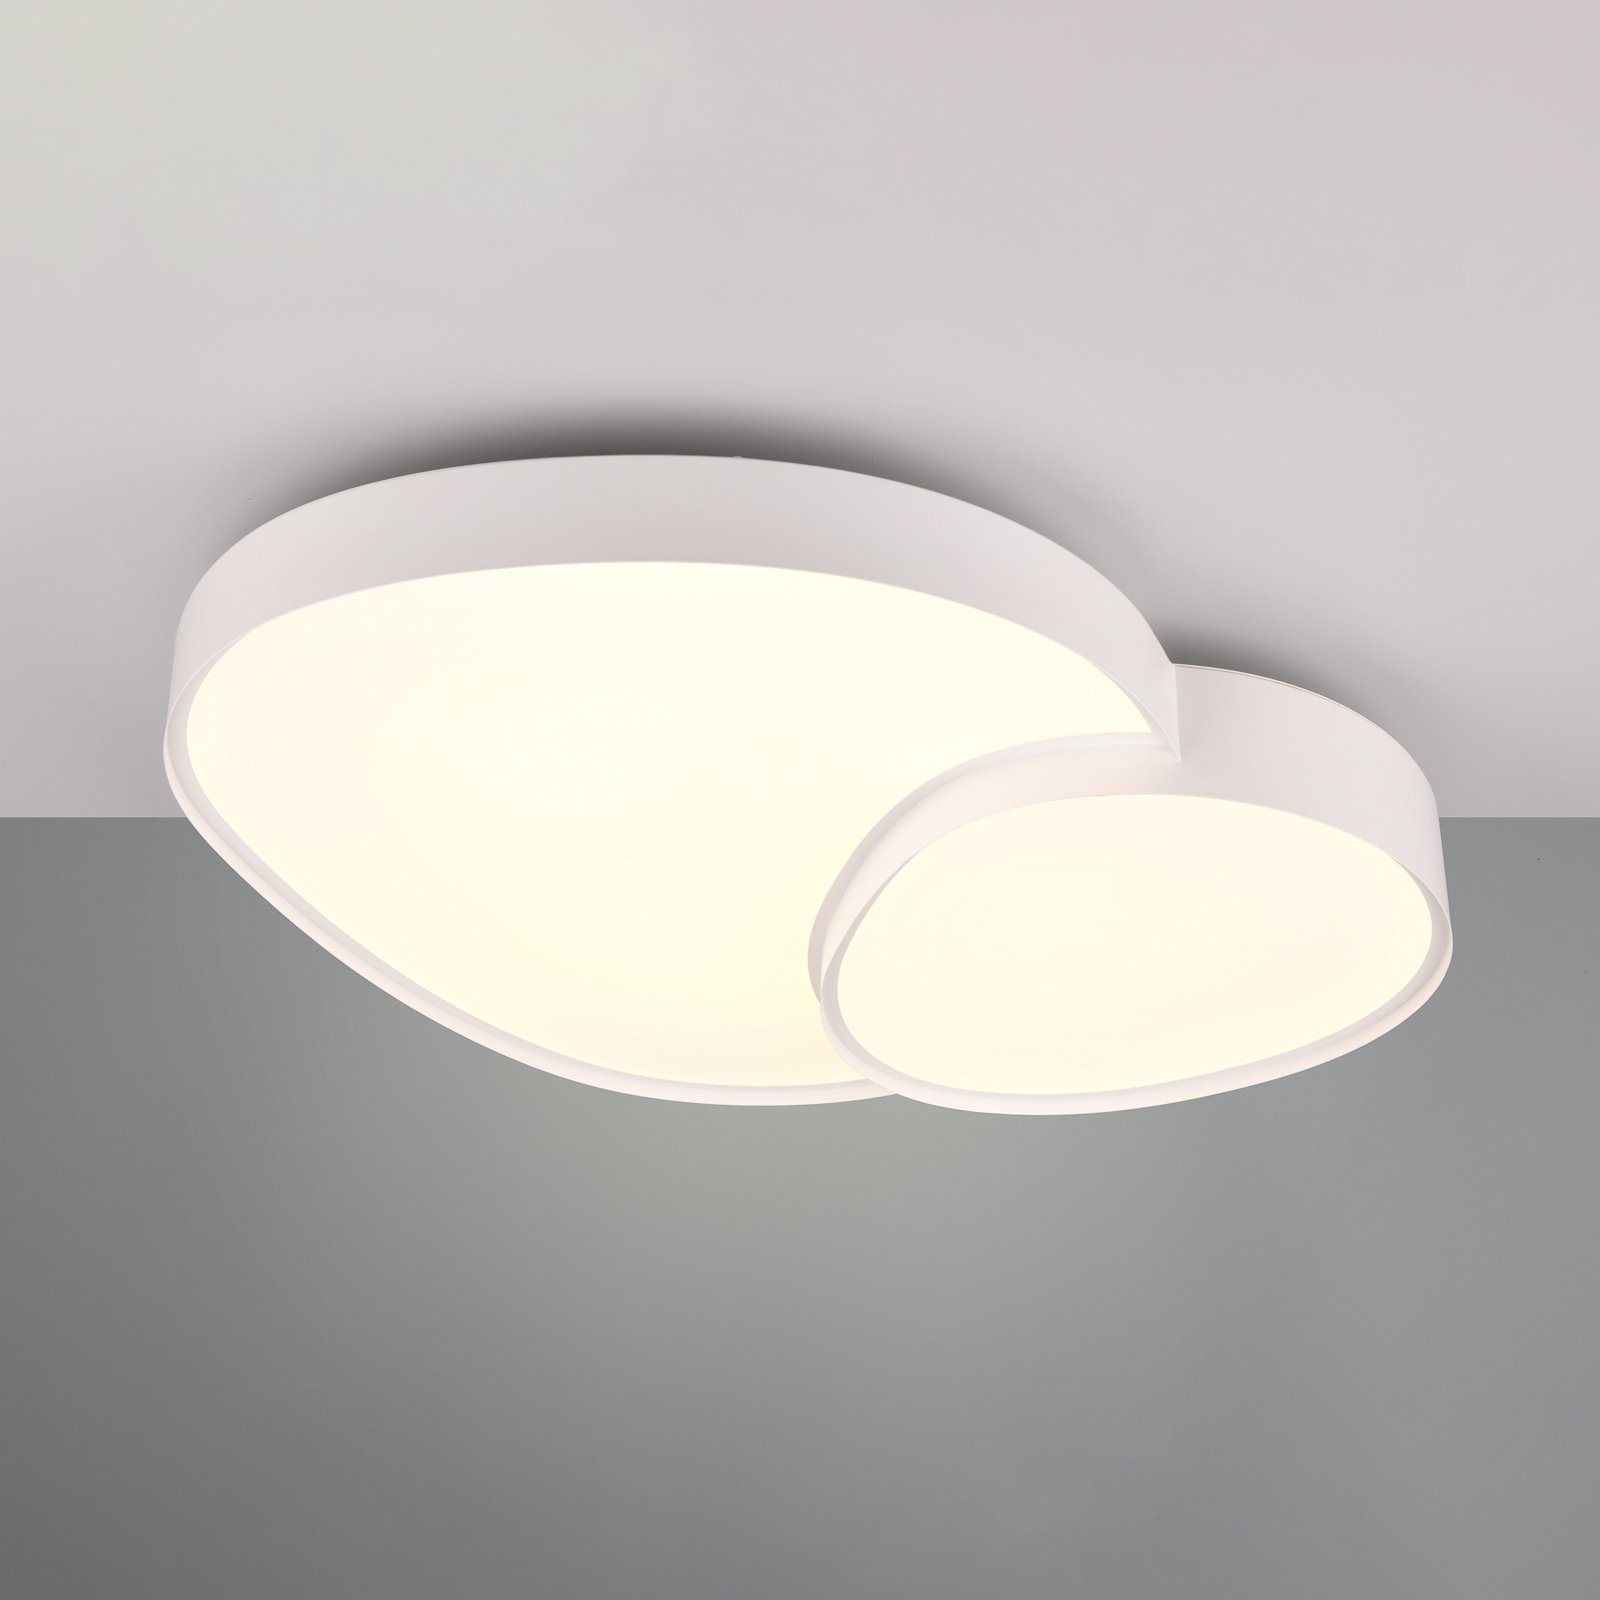 LED lubinis šviestuvas "Rise", baltos spalvos, 77 x 63 cm, CCT,